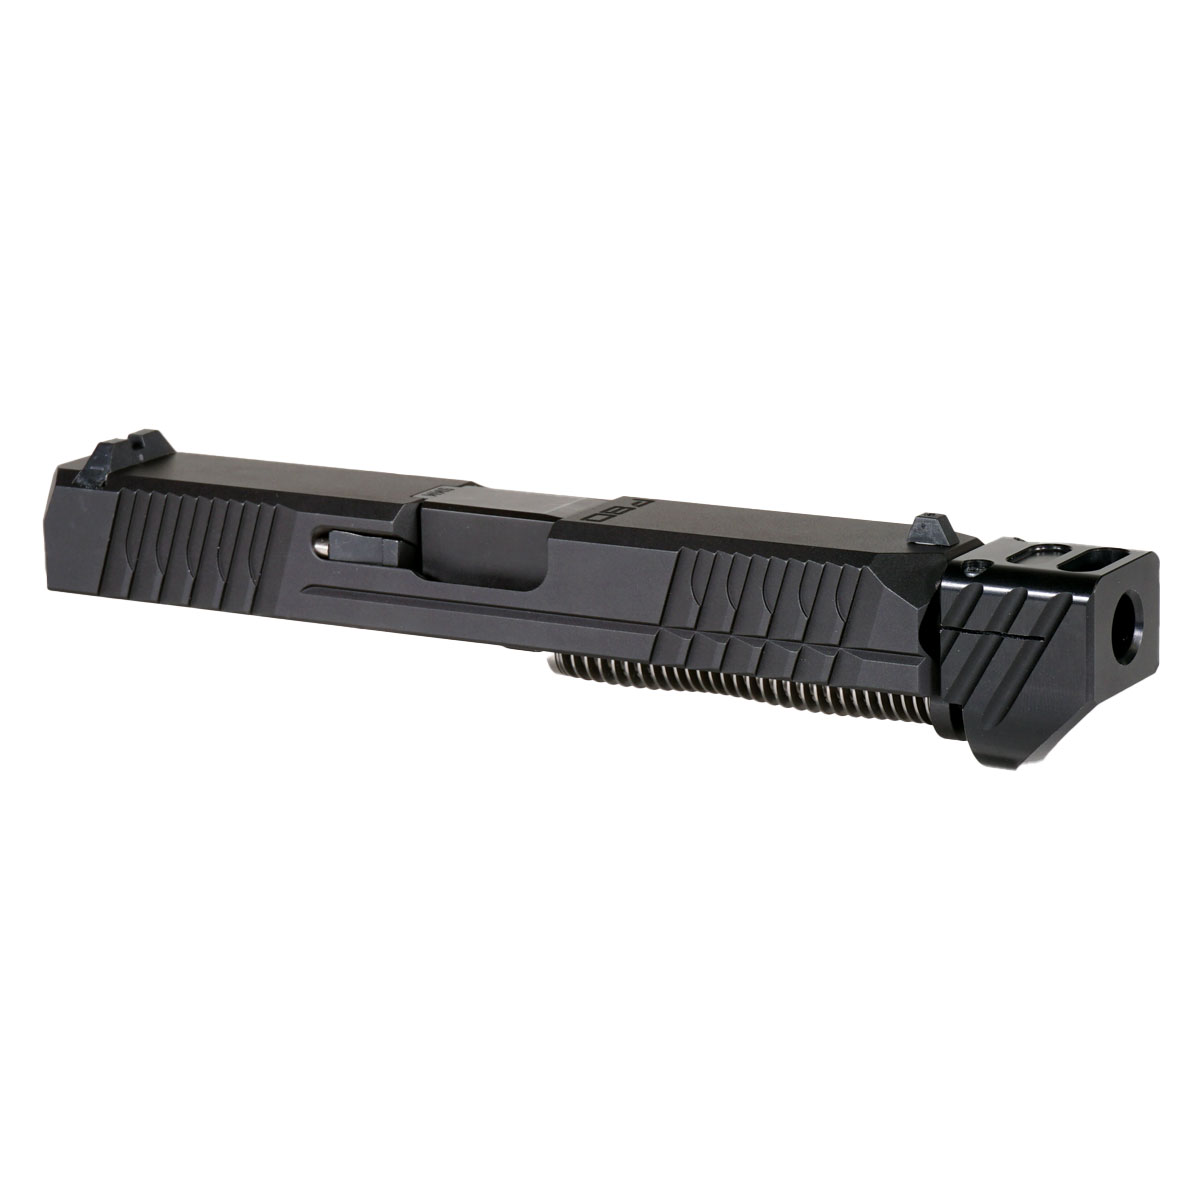 DTT 'Paracausal V4 w/ Black Compensator' 9mm Complete Slide Kit - Glock 19 Gen 1-3 Compatible